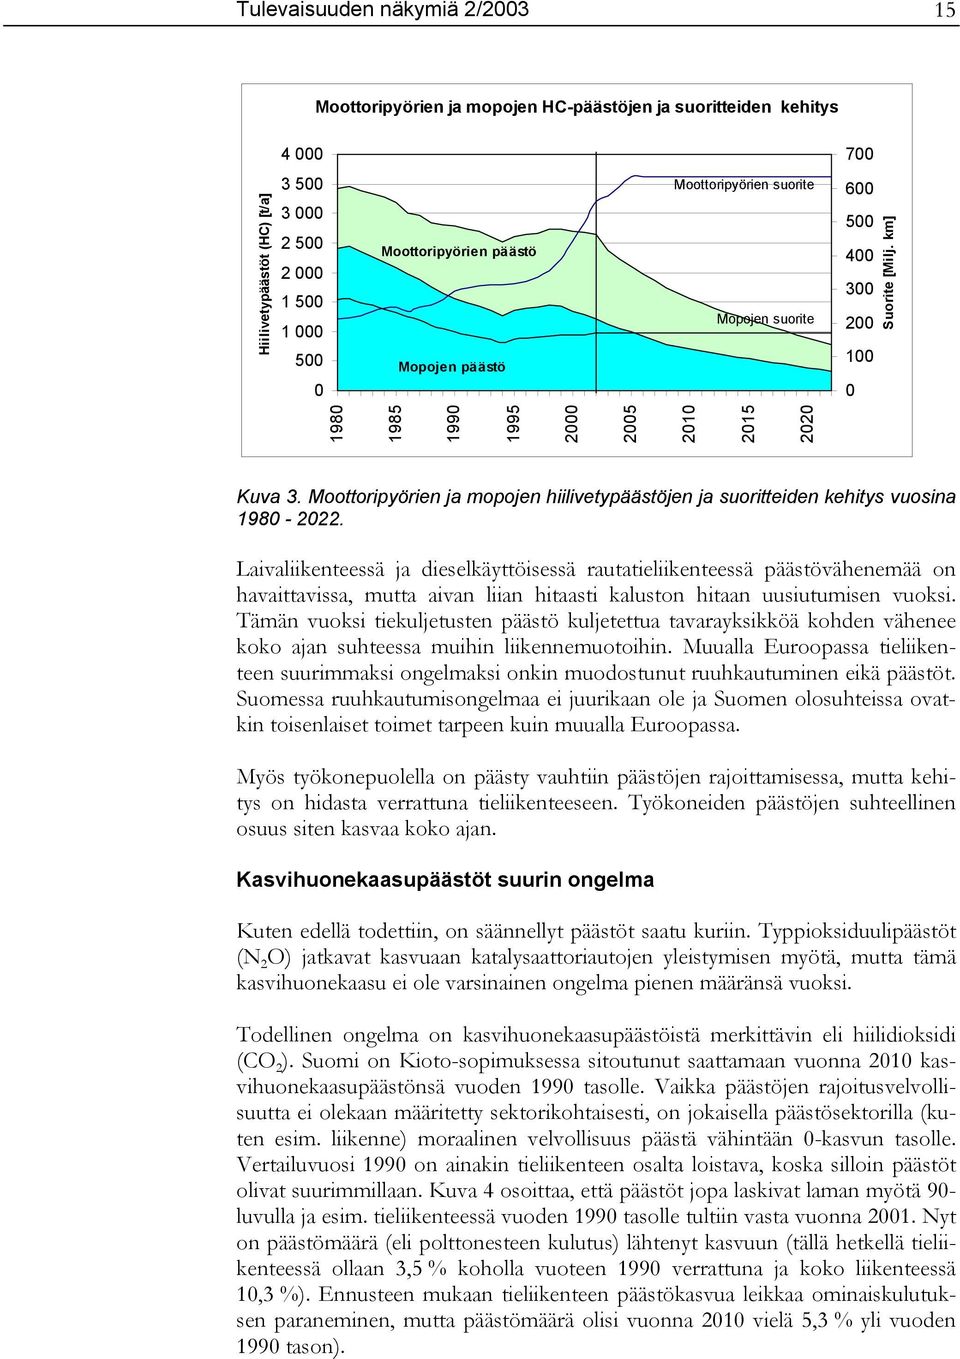 Moottoripyörien ja mopojen hiilivetypäästöjen ja suoritteiden kehitys vuosina 1980-2022.